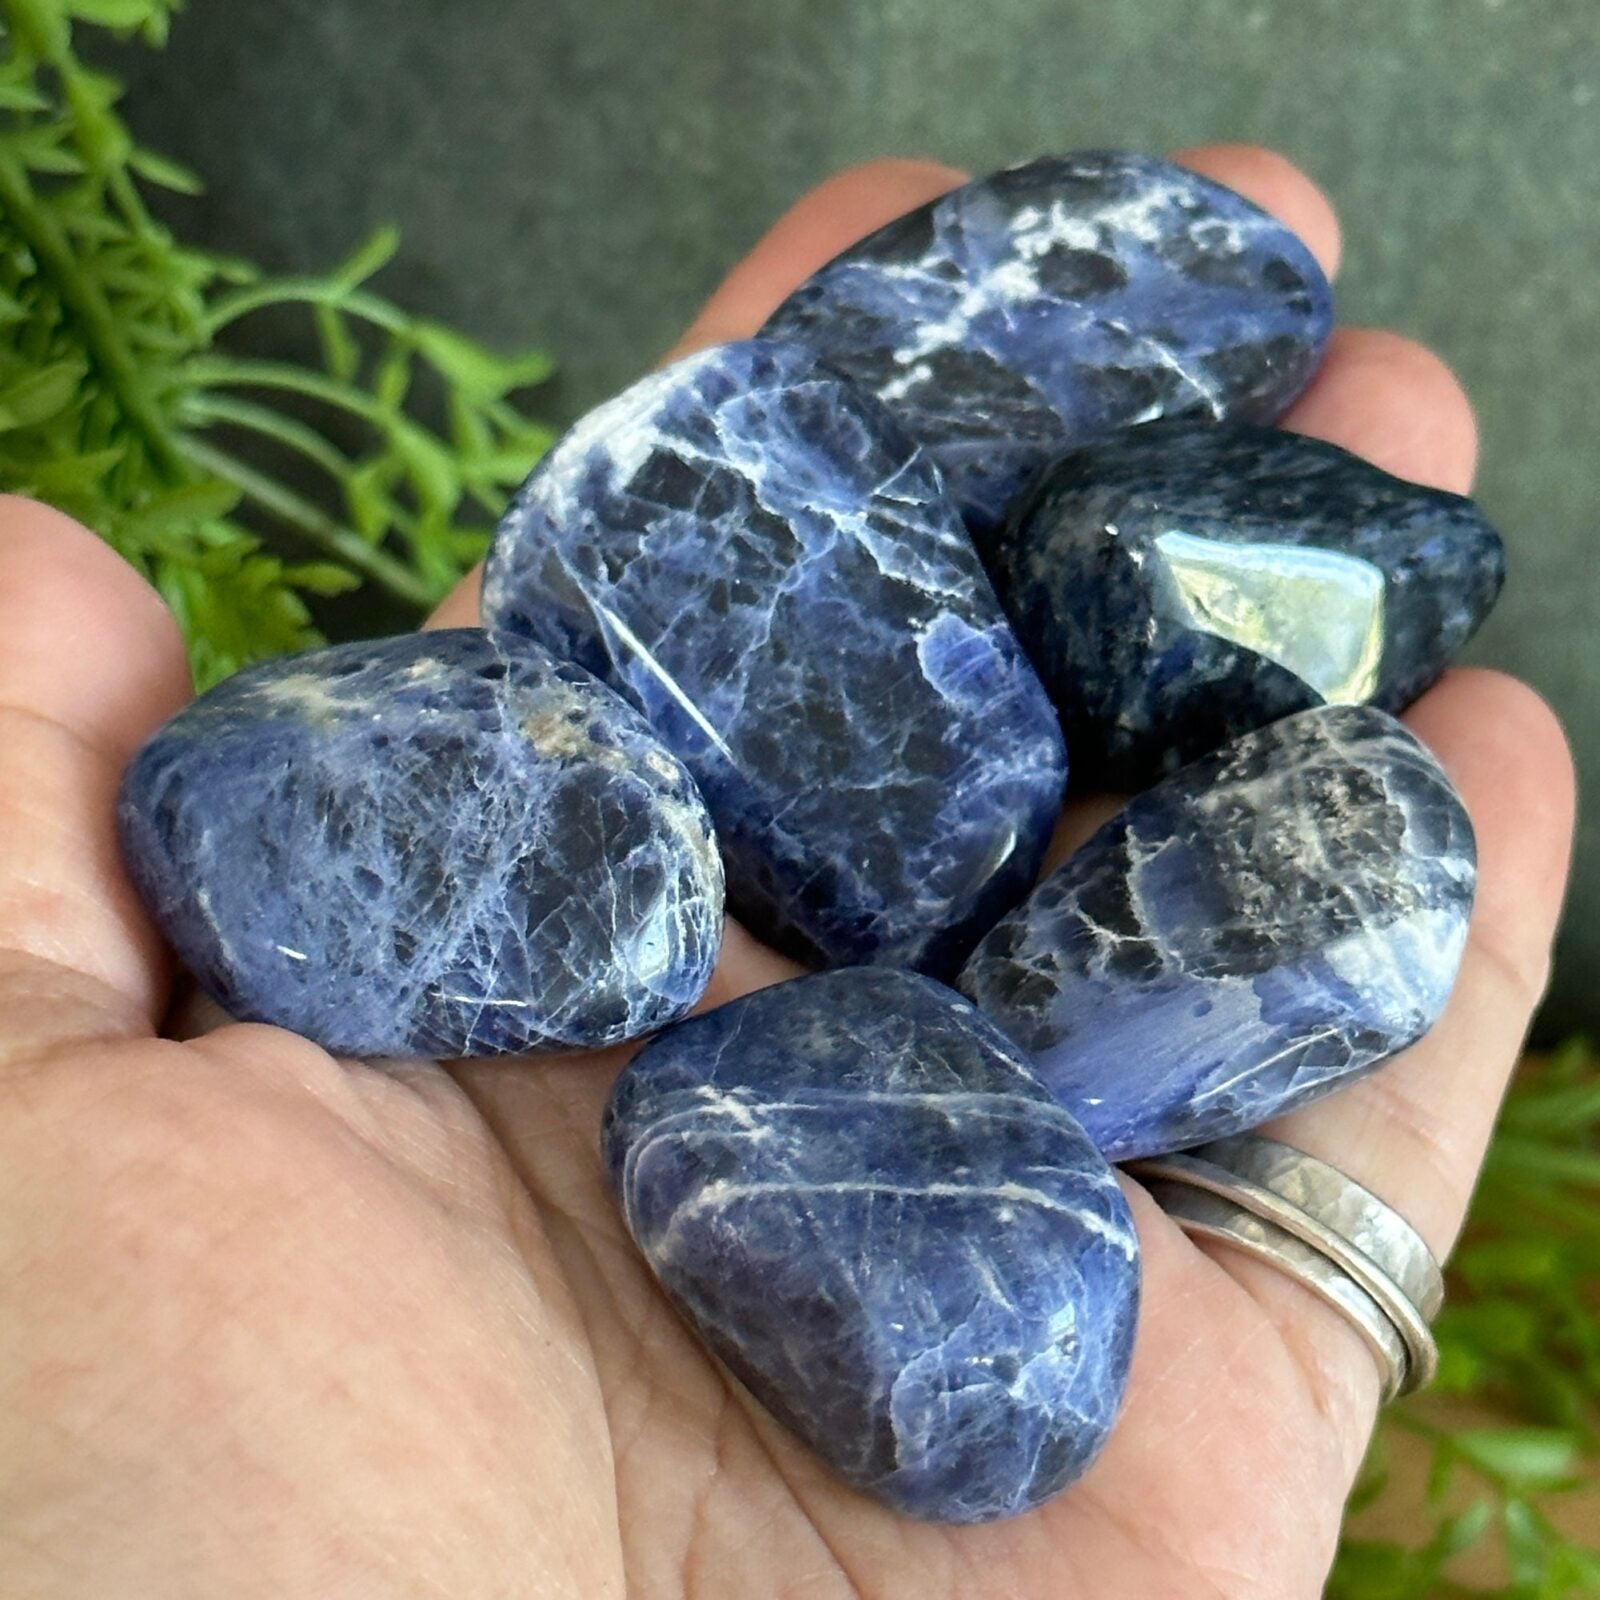 Extra large Sodalite Tumbled Stones